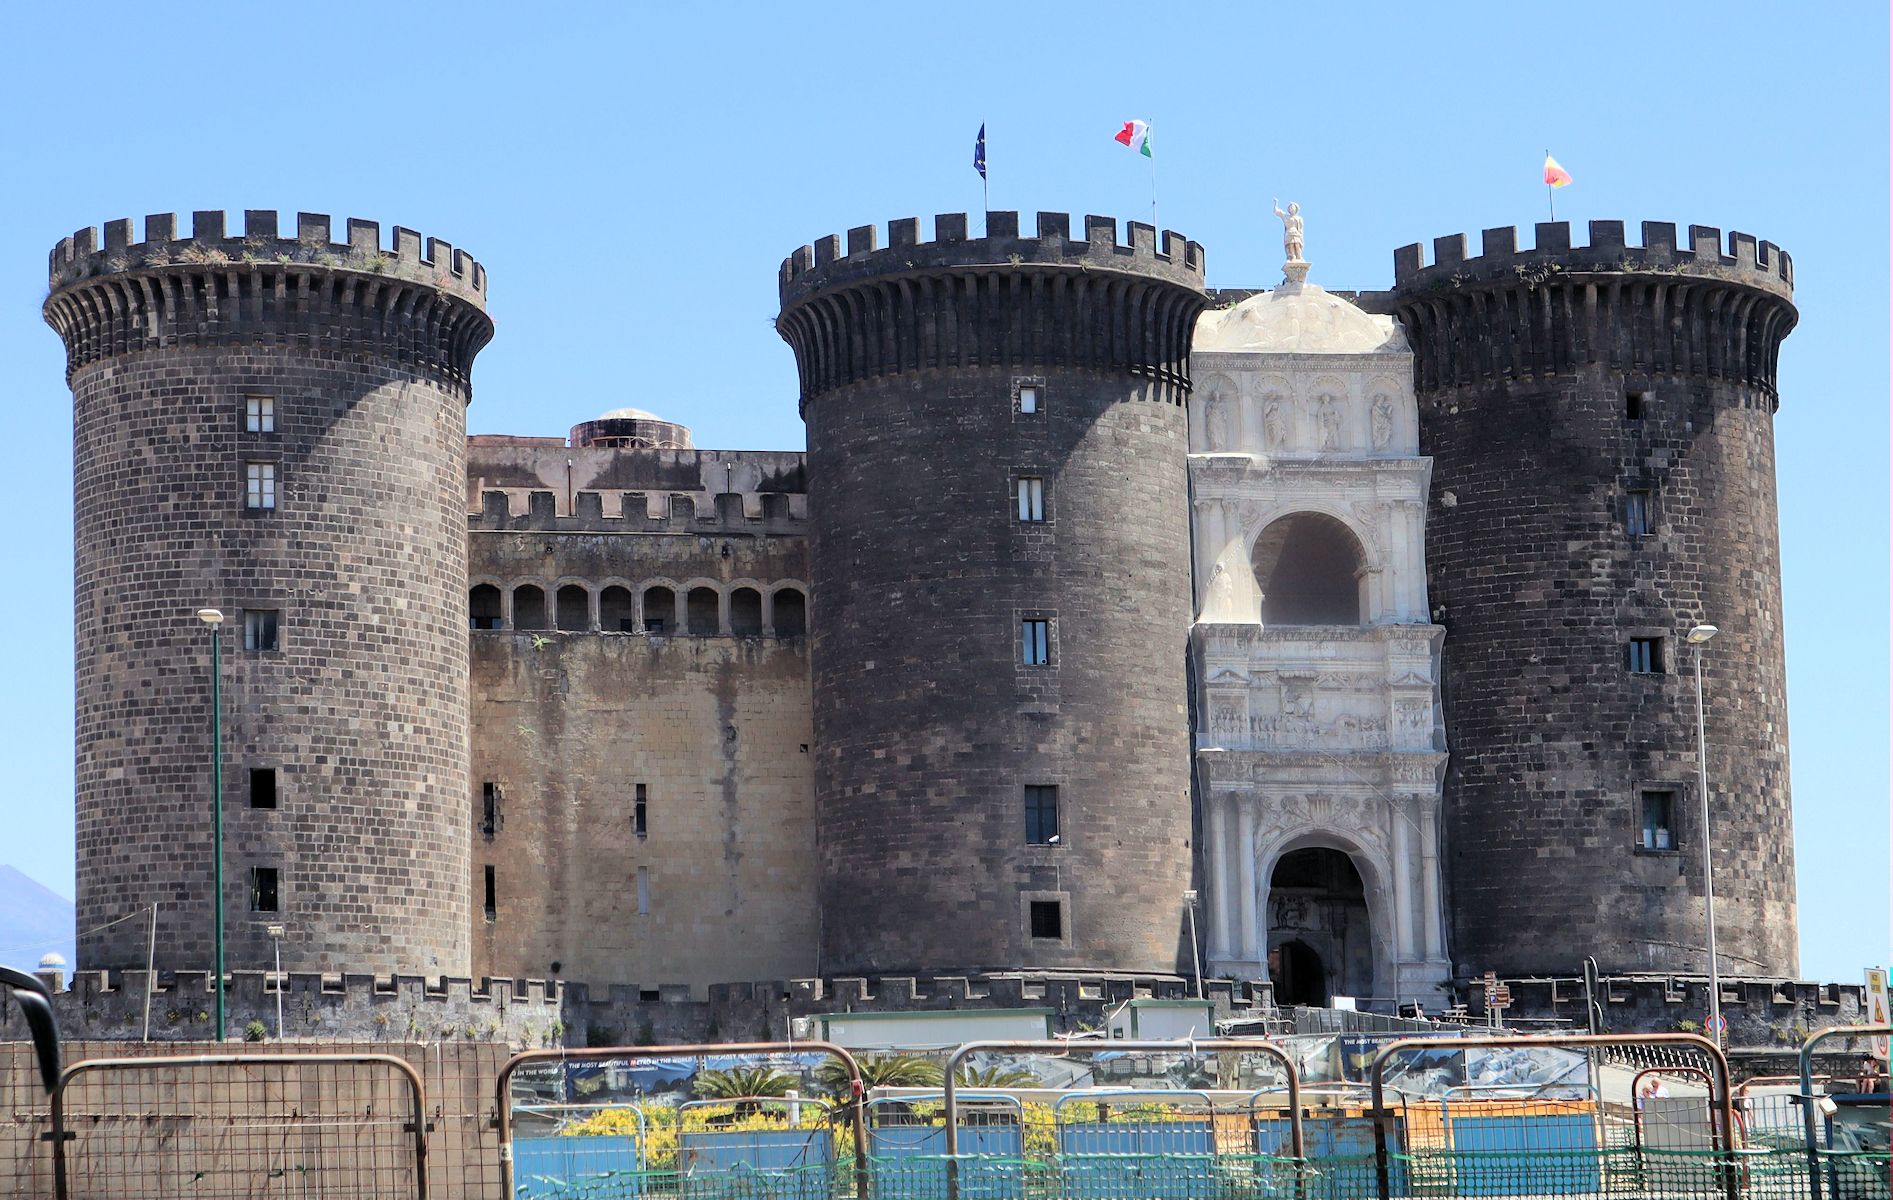 Castel Nuovo in Neapel